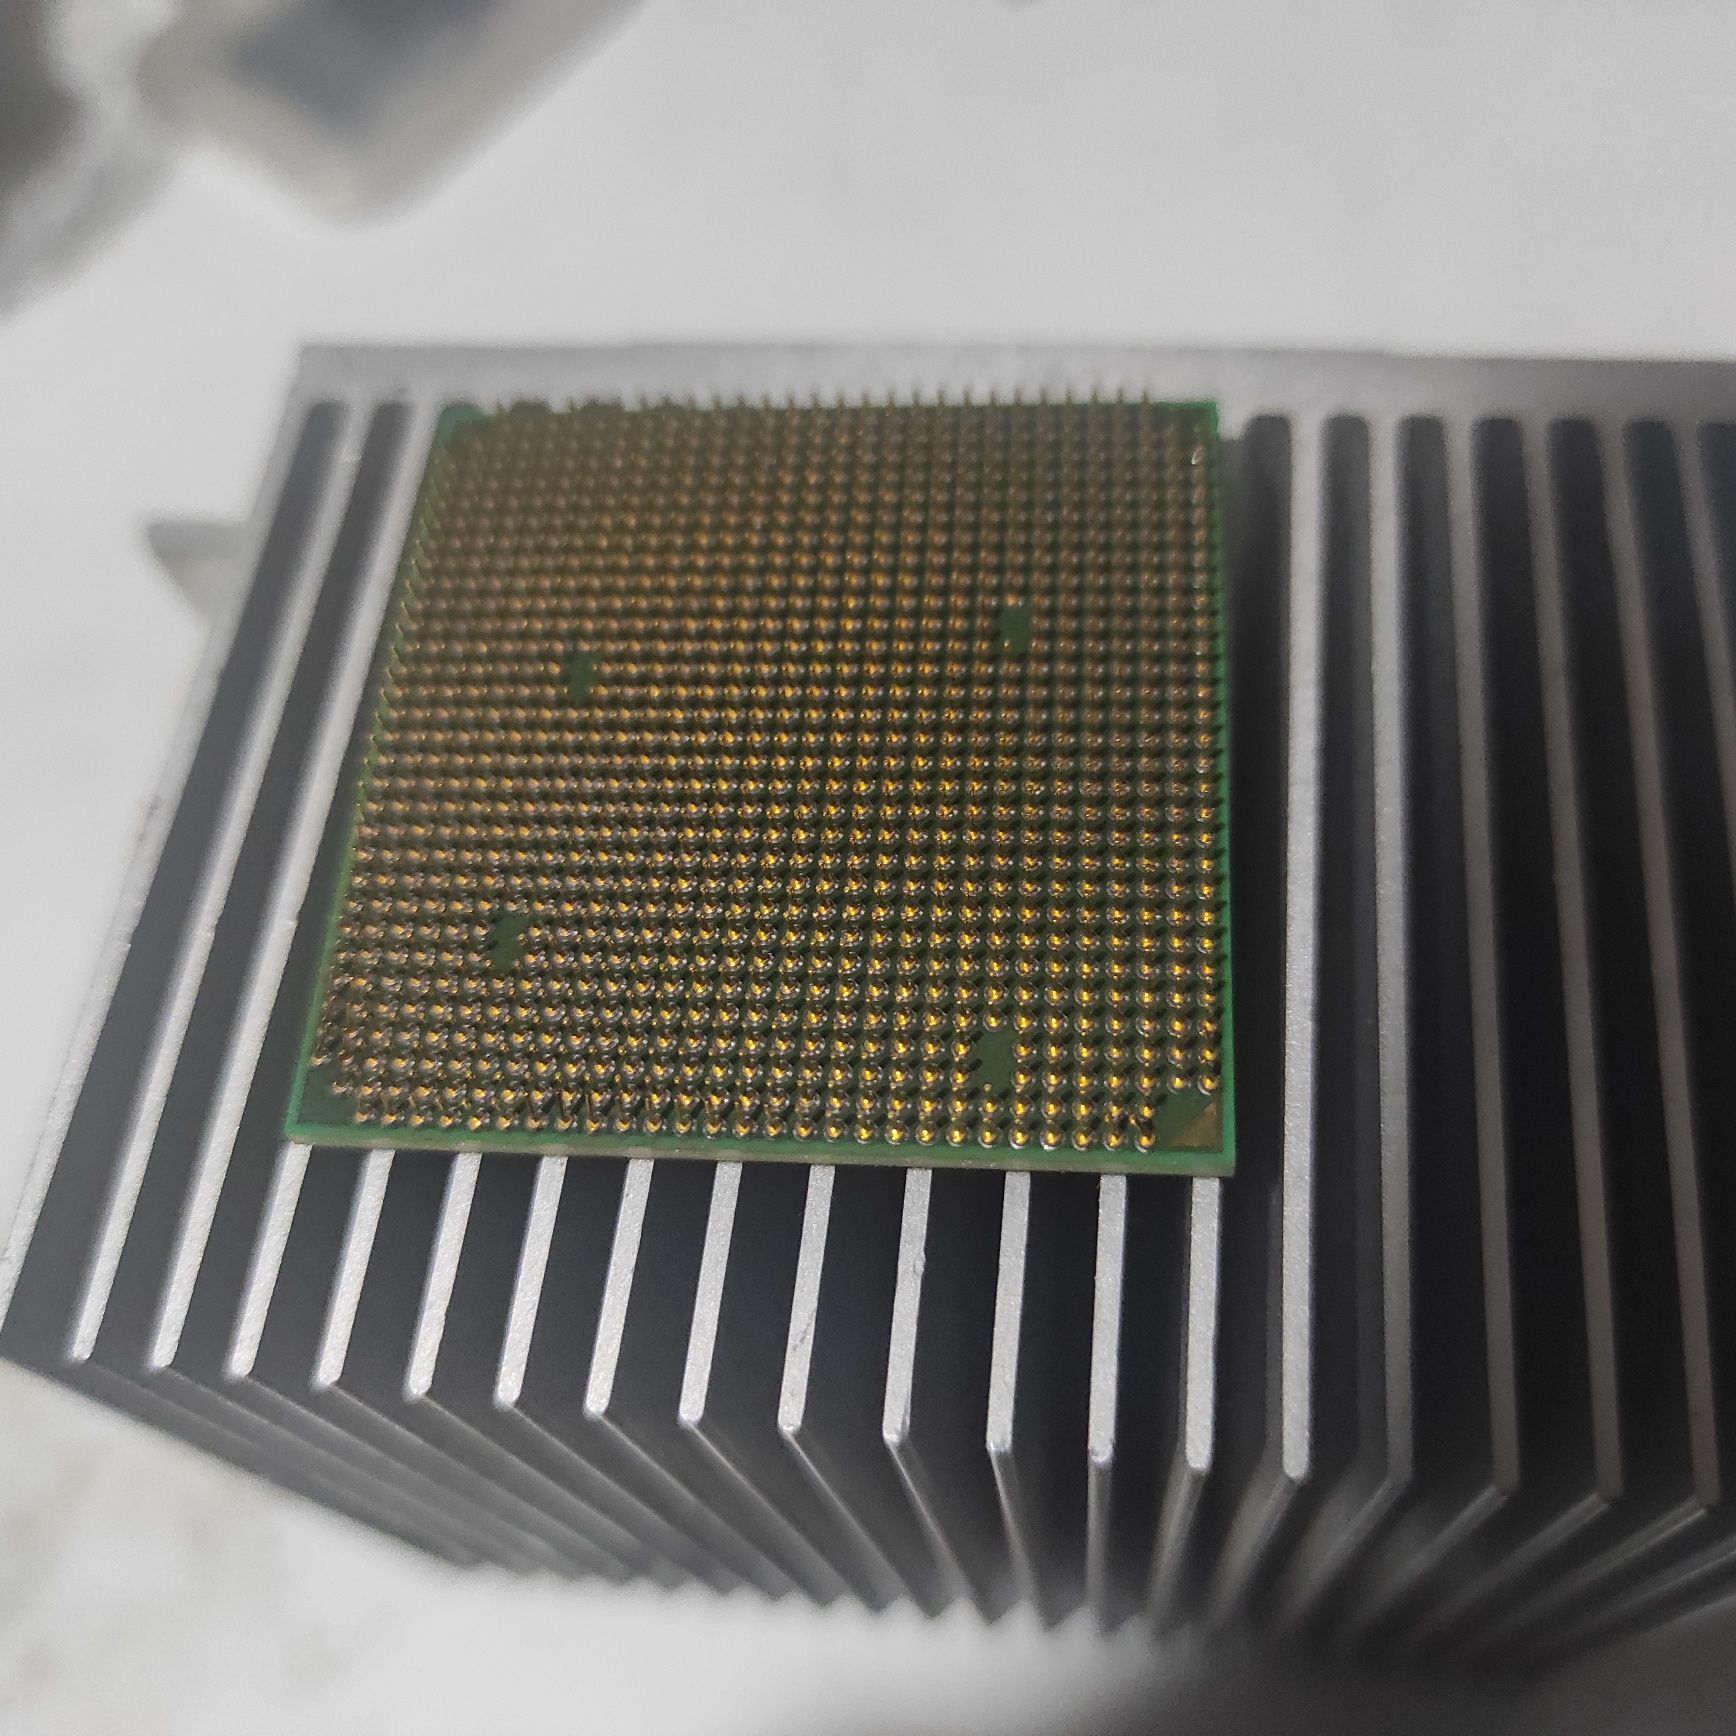 Procesor AMD 64 bit 3800 x2 duży  radiator gratis